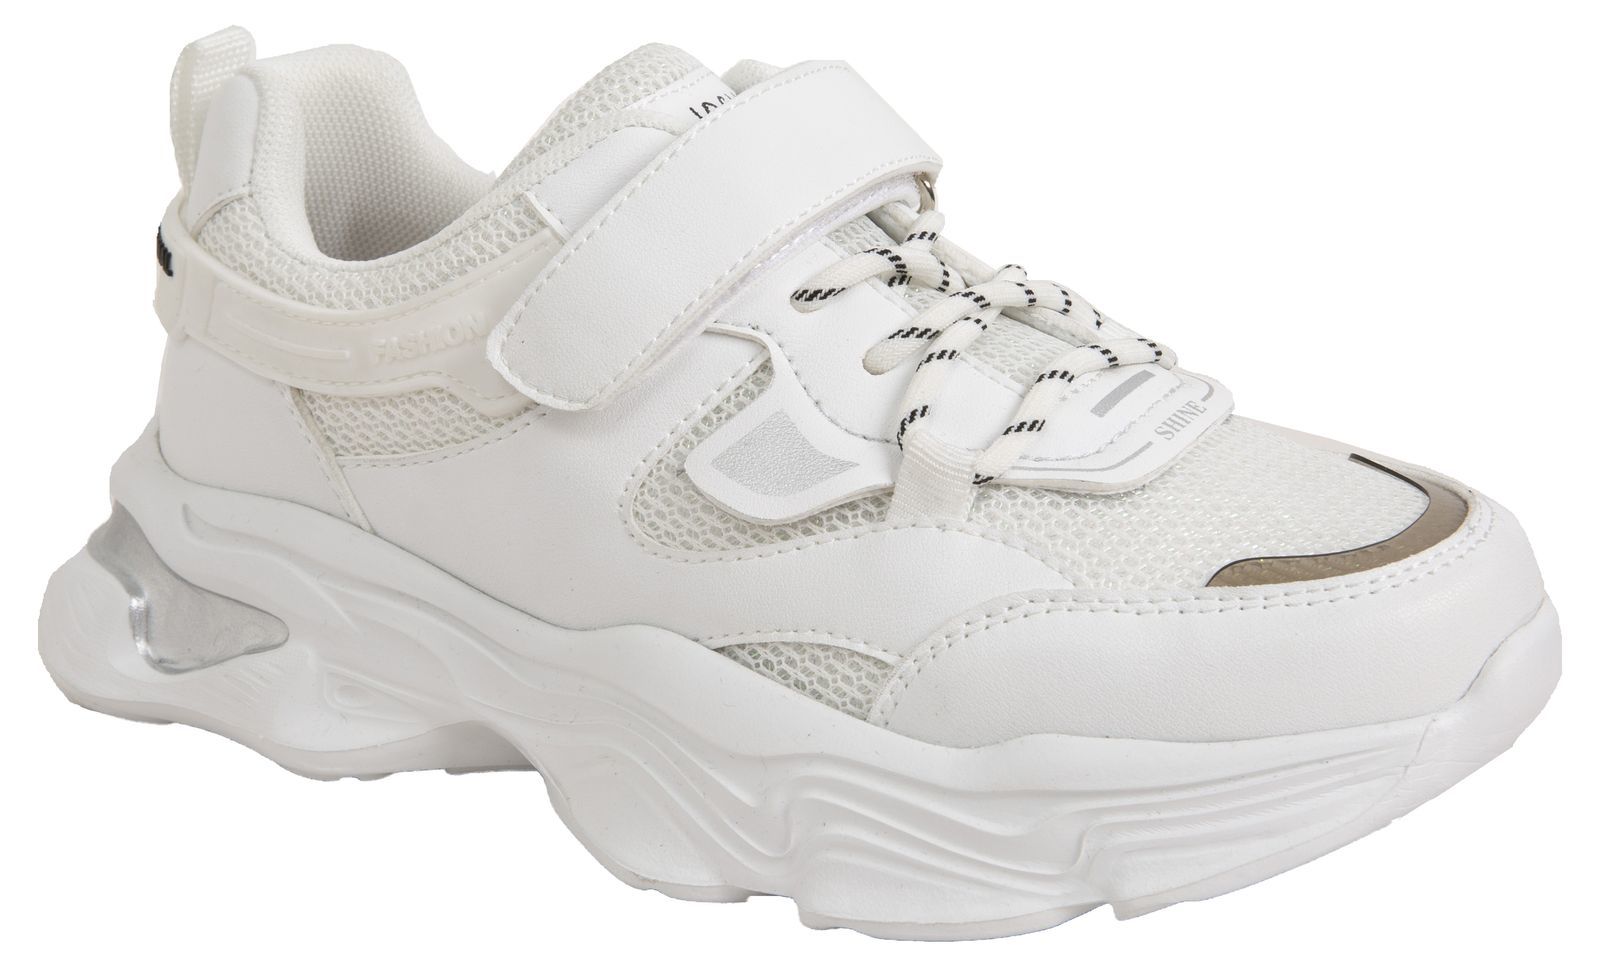 Кроссовки Tom-Miki для девочек, размер 36, T-10469-A, белые, 1 пара